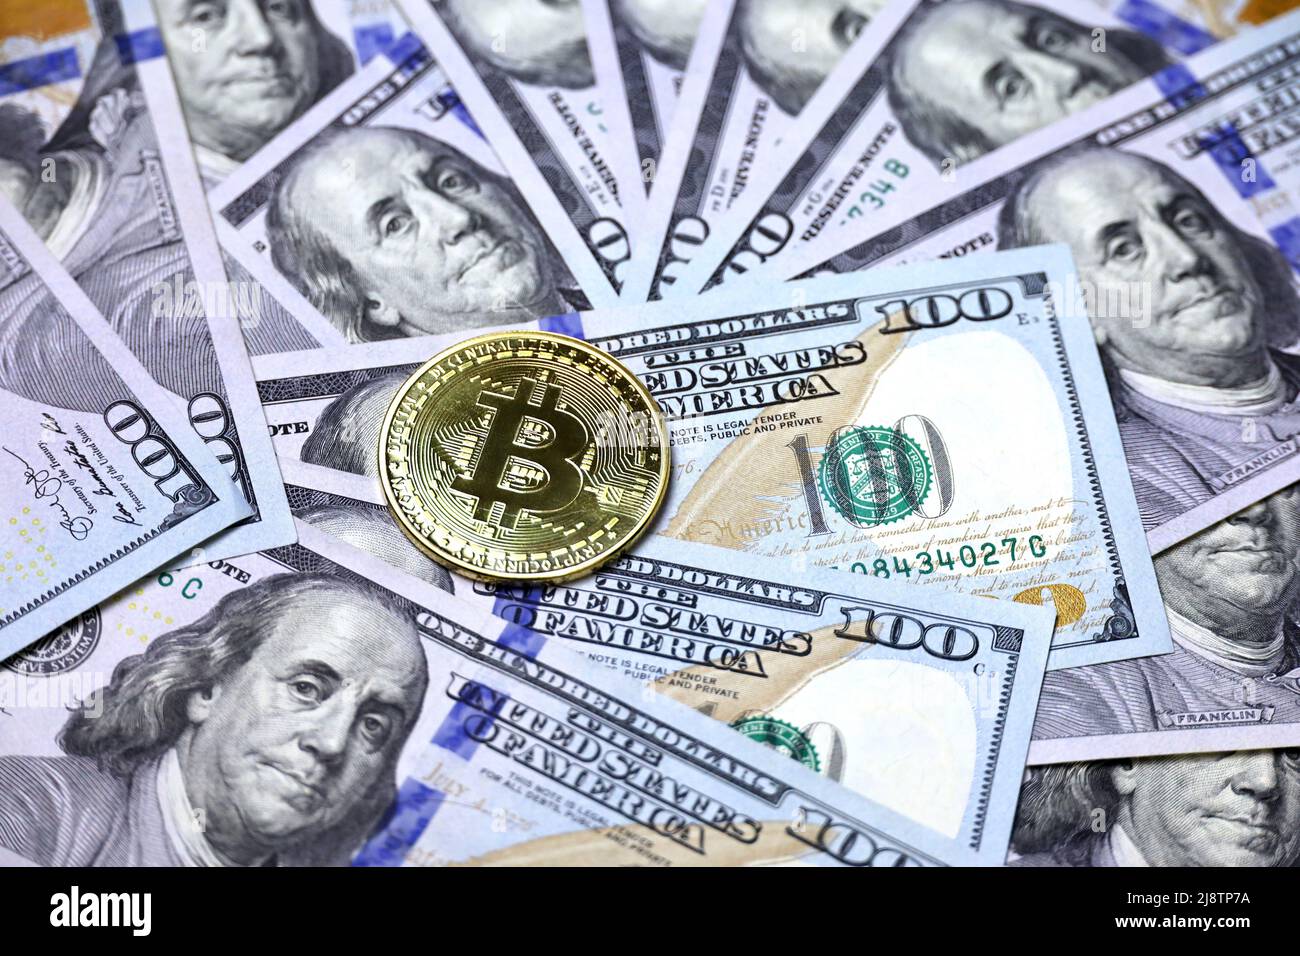 Bitcoin sur les billets en dollars américains. Concept de monnaie électronique décentralisée, monnaie crypto, commerce mondial et économie Banque D'Images